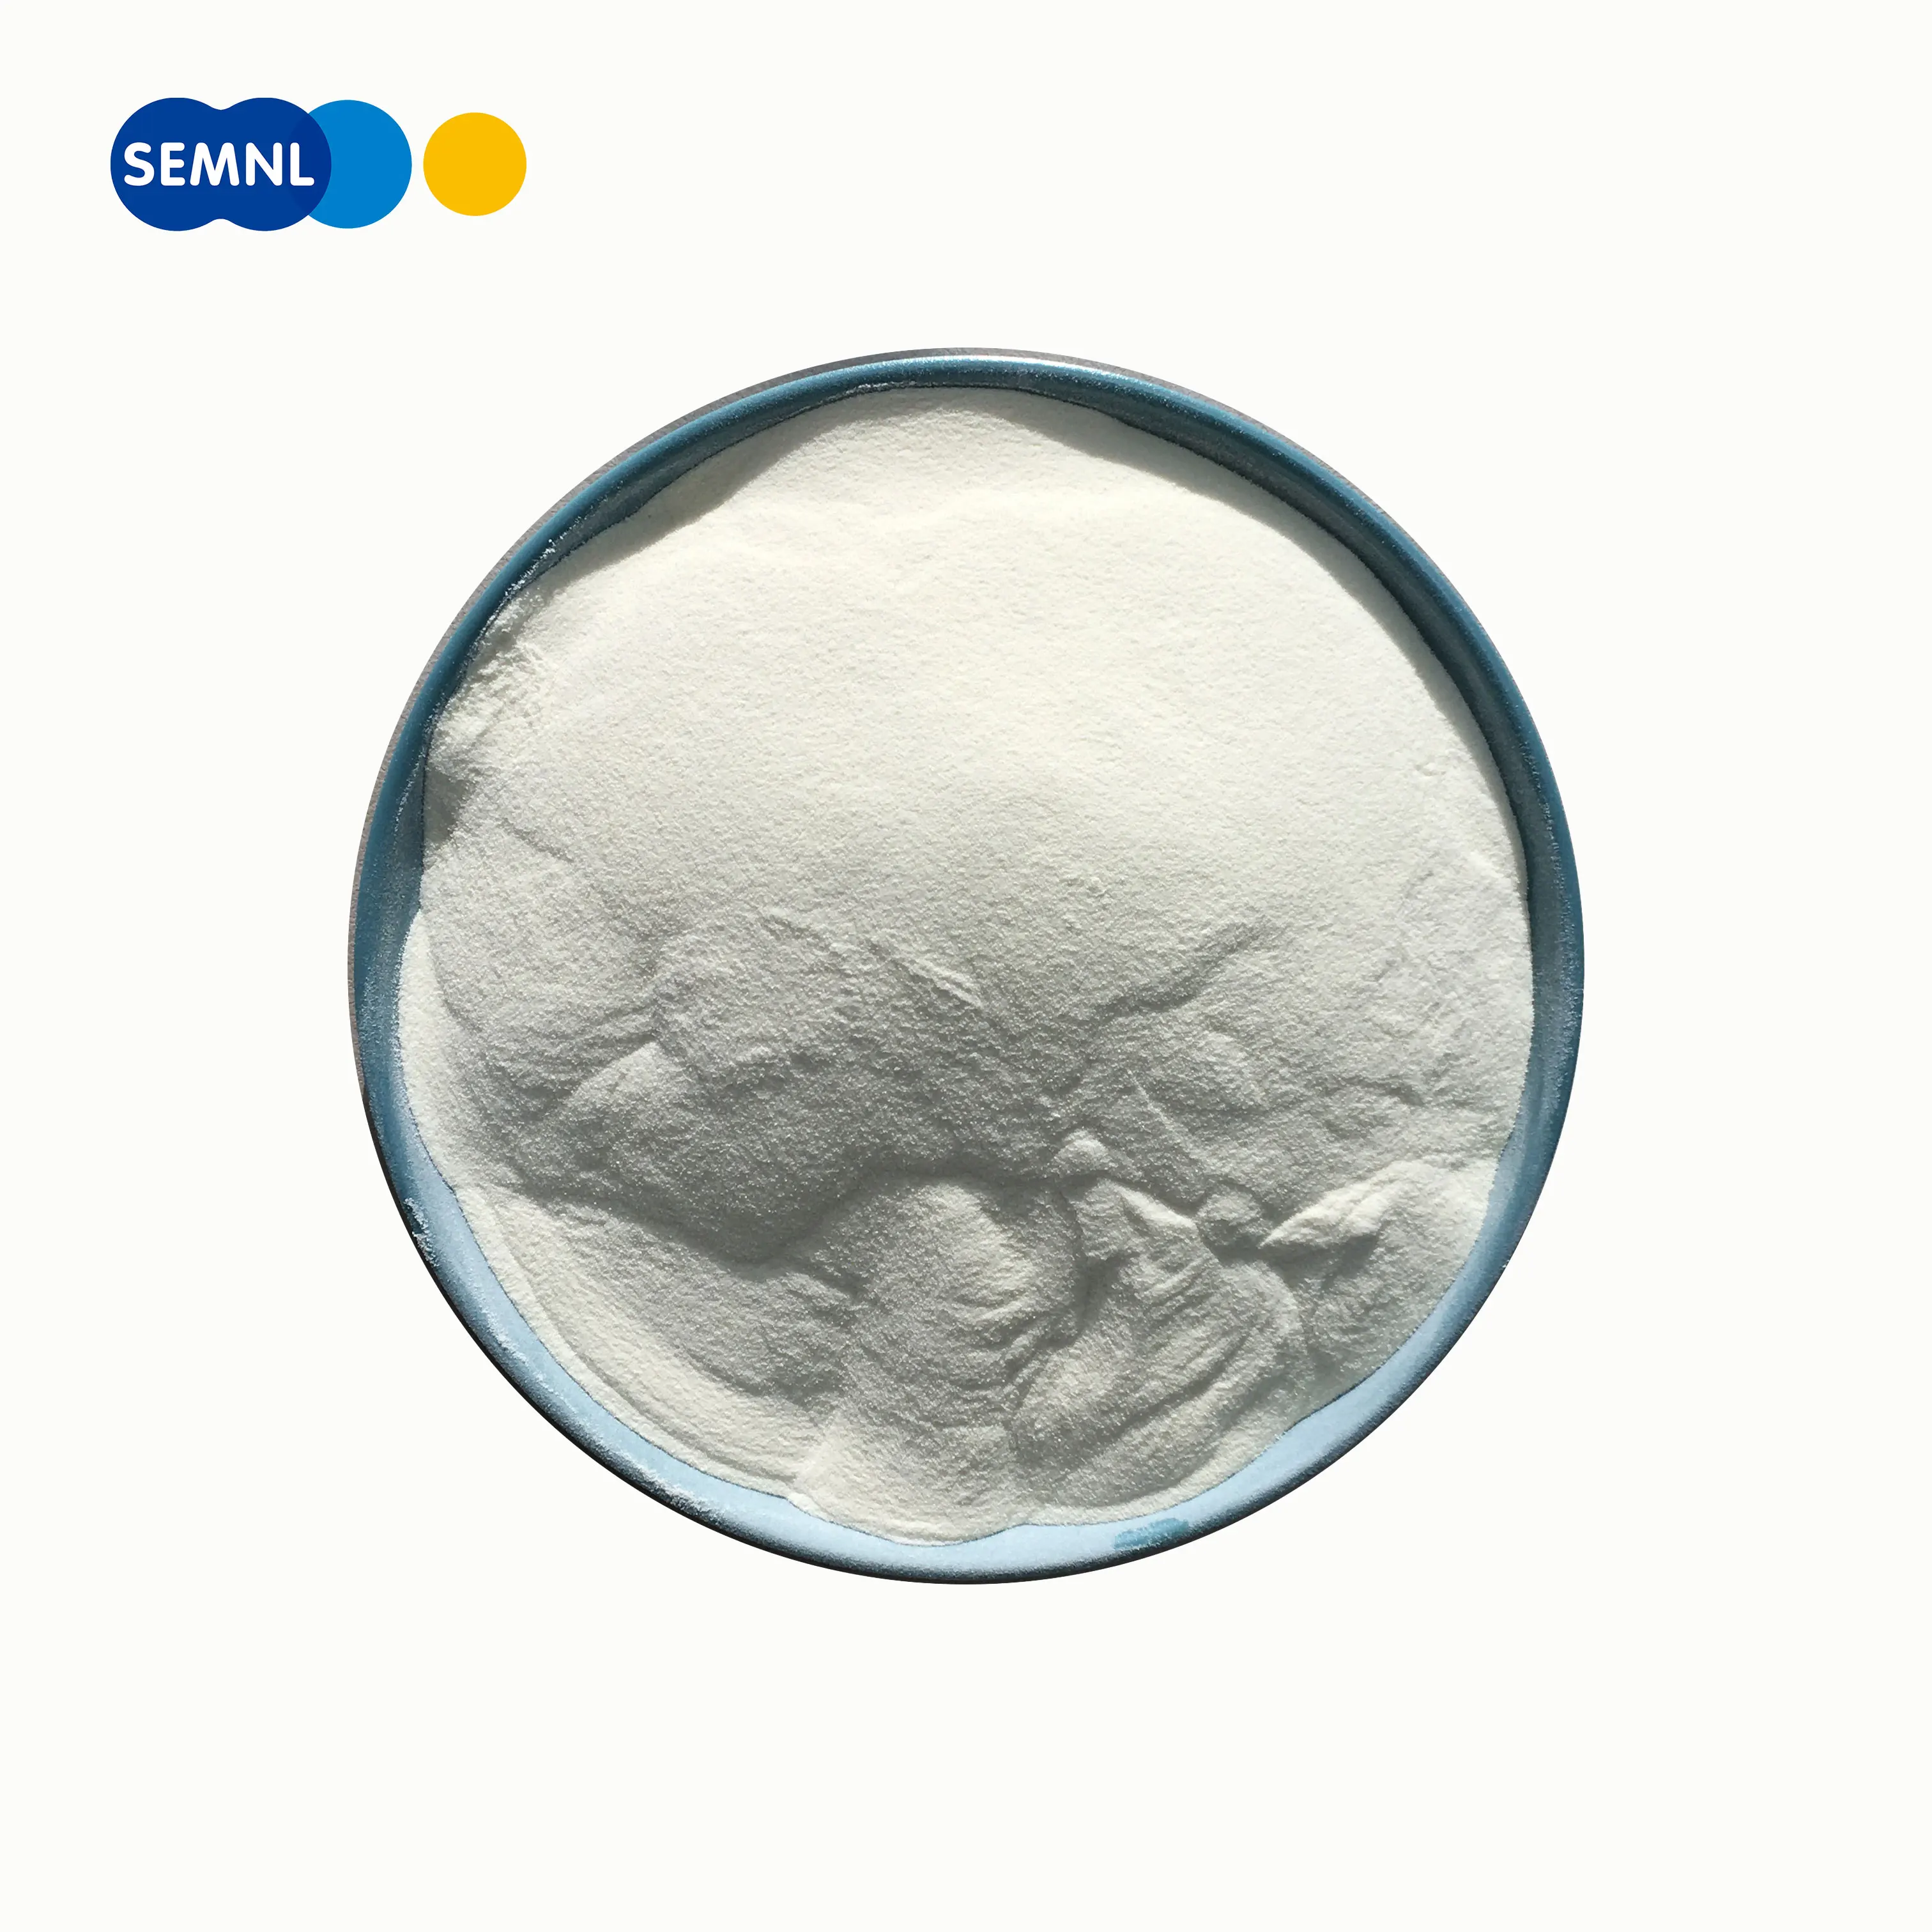 Hydrolyzed Bovine Collagen Powder